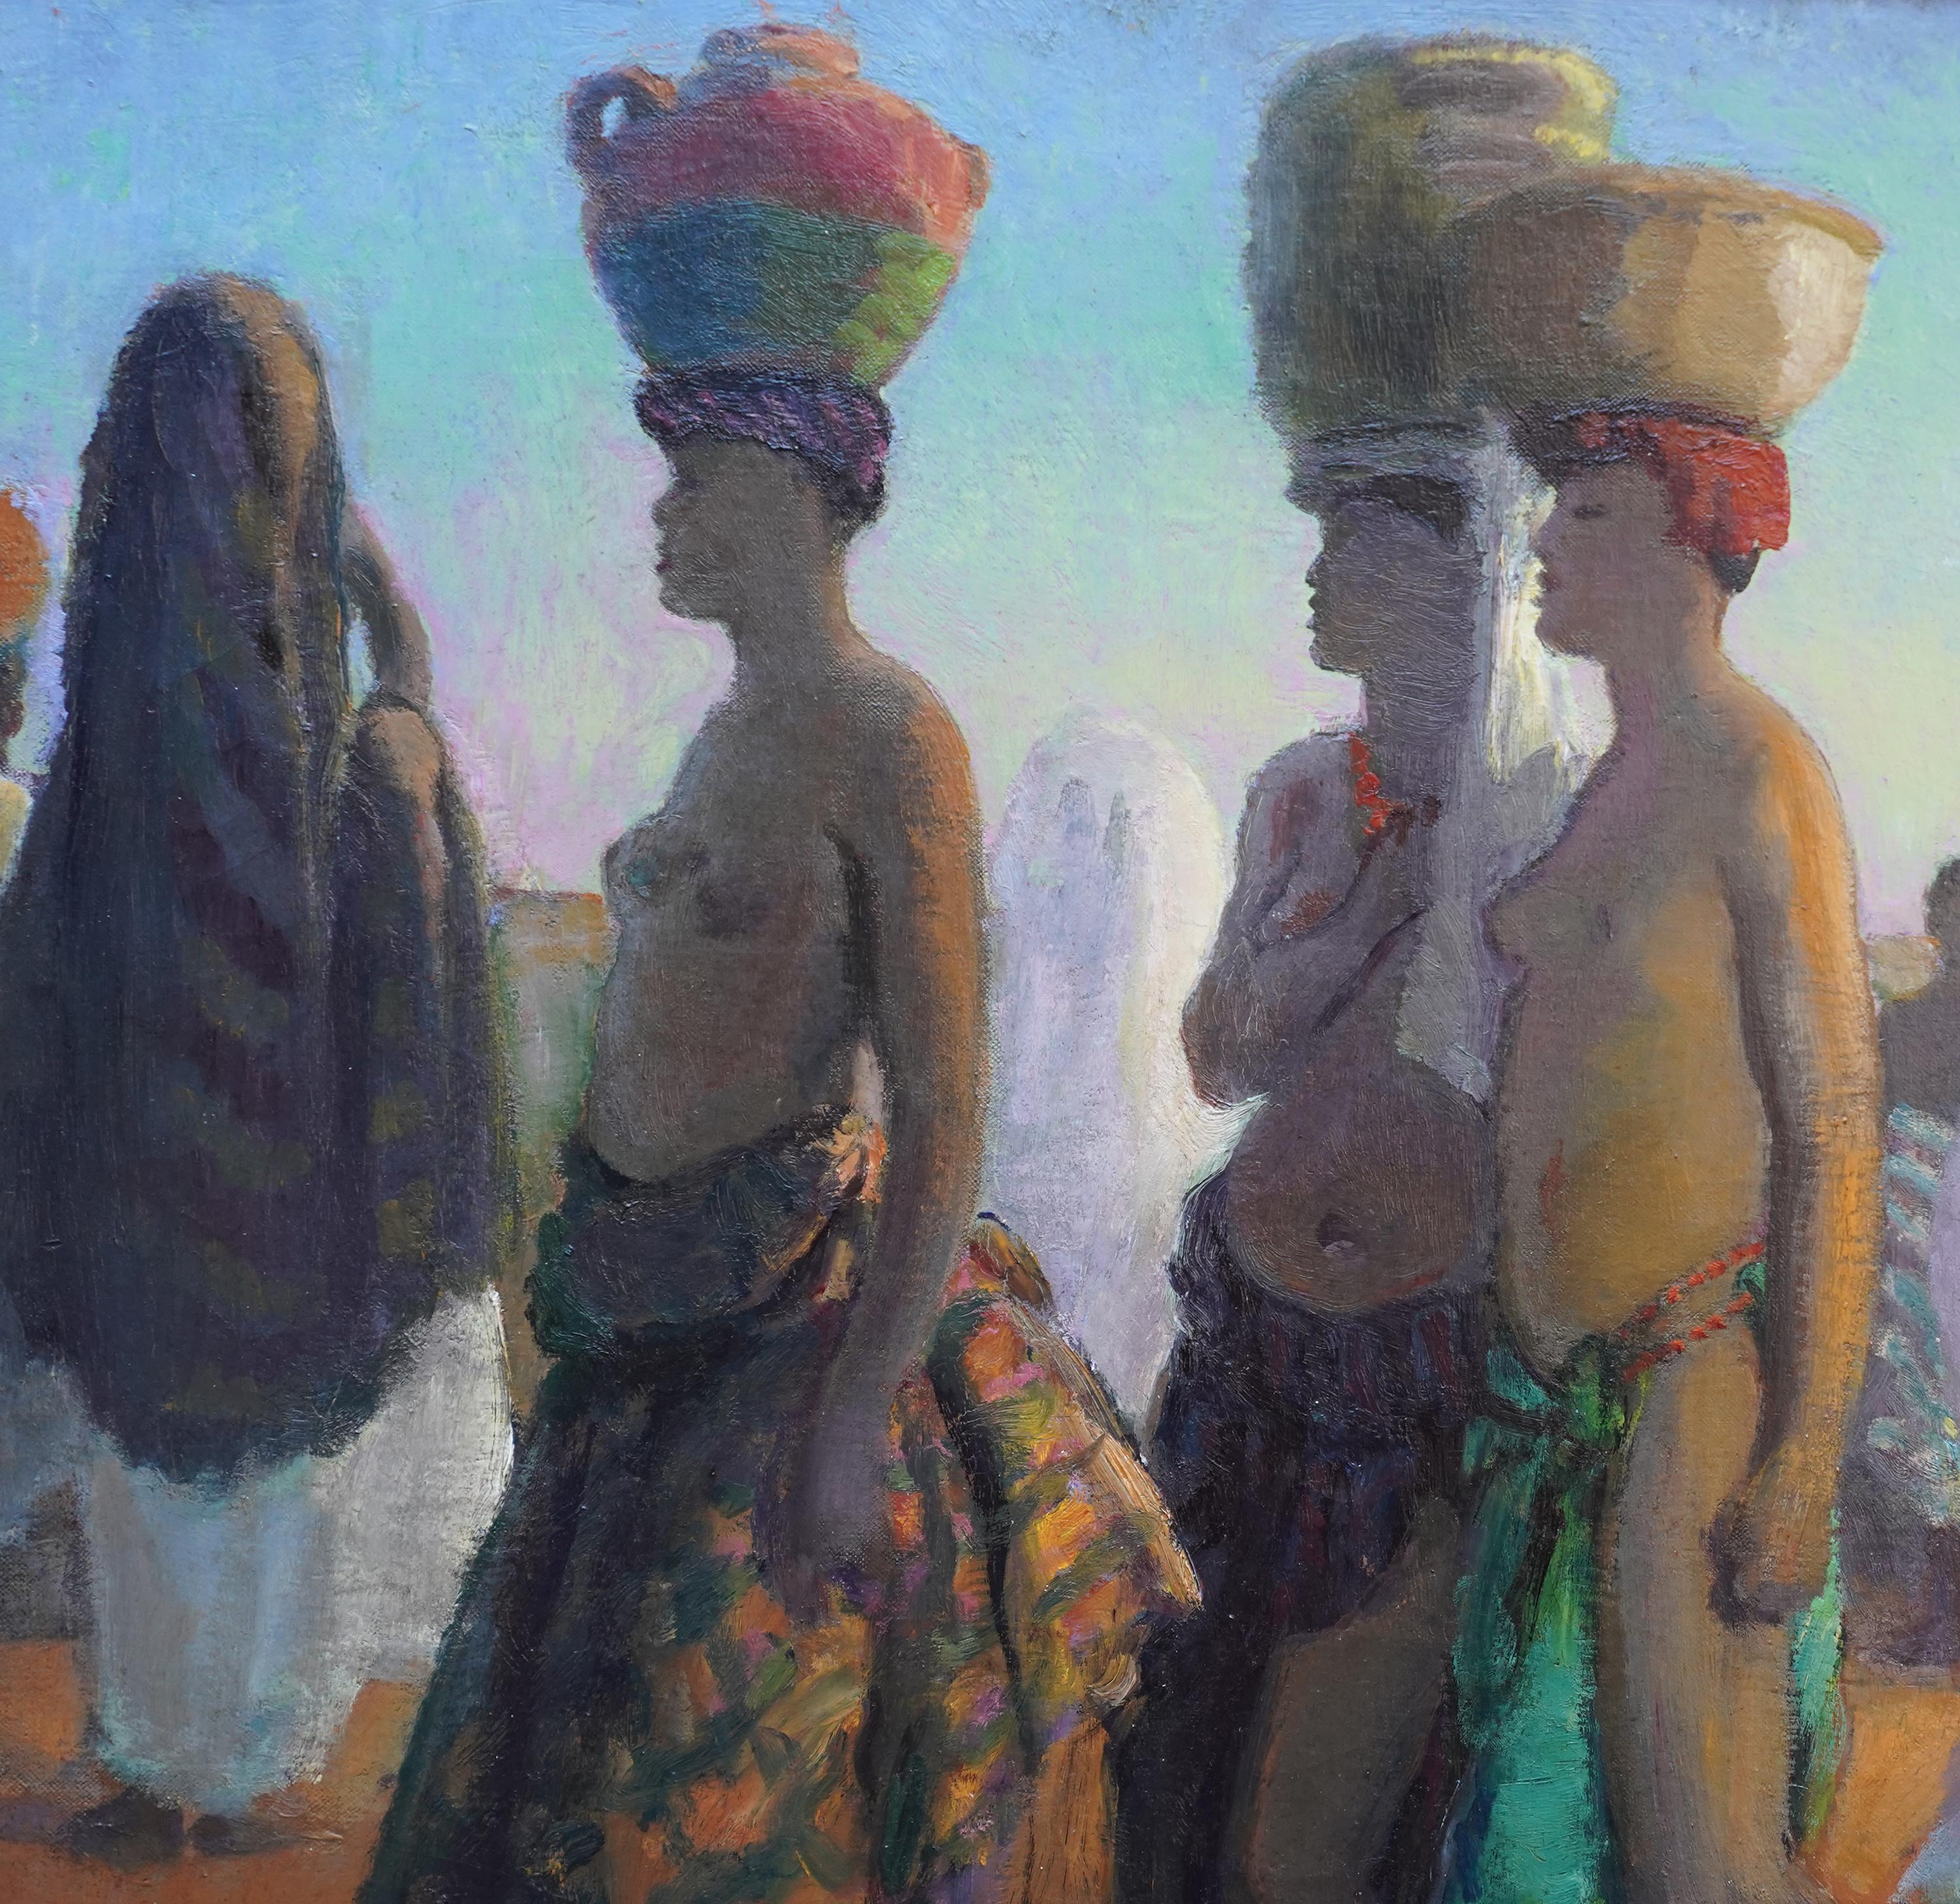 Questo superbo e vibrante dipinto a olio orientalista post-impressionista è opera del noto artista britannico Gerald Spencer Pryse. È stato dipinto intorno al 1925, quando Pryse stava visitando il Marocco e l'Africa settentrionale. Il dipinto